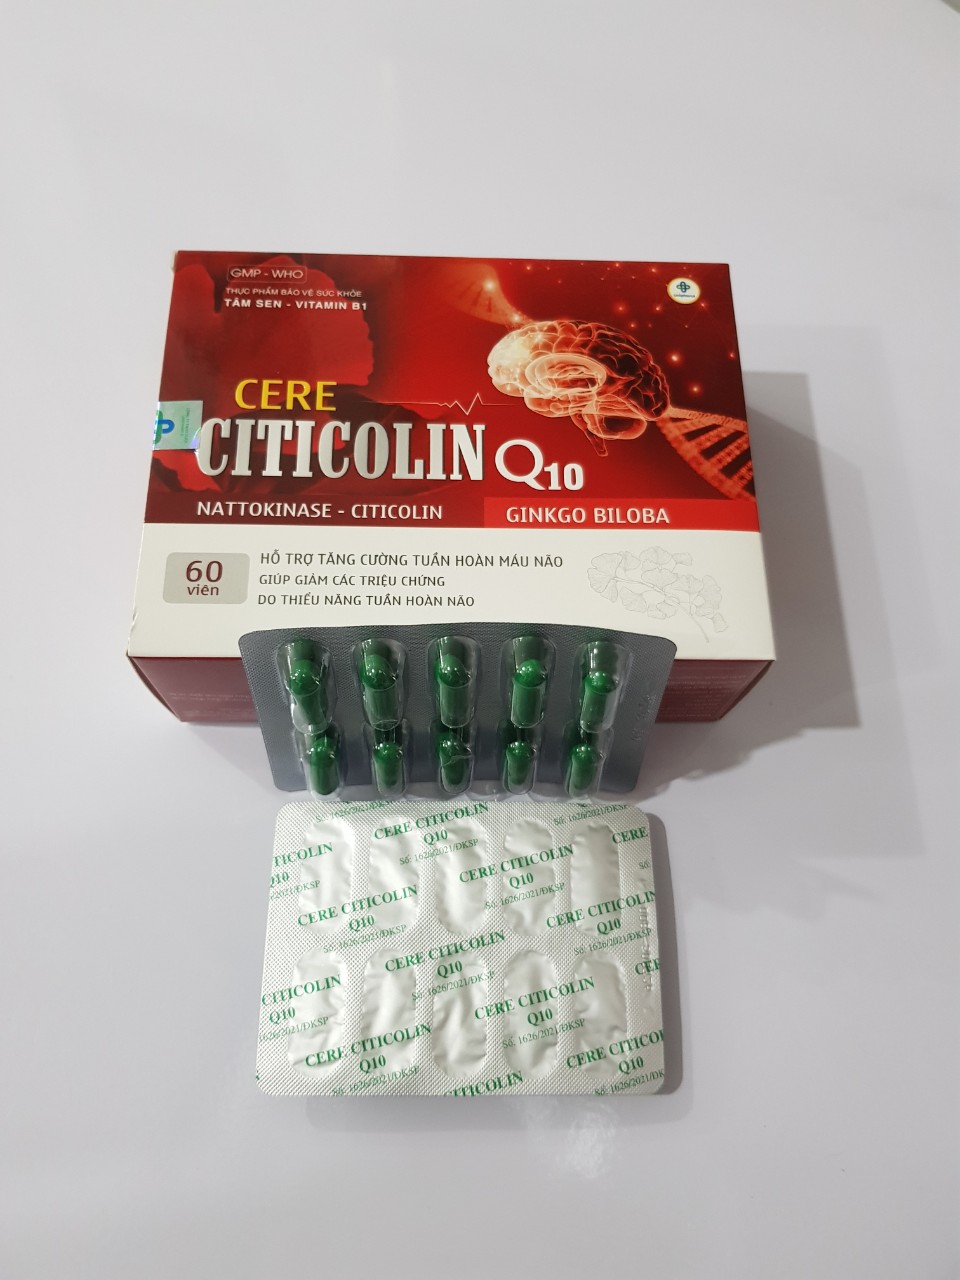 Cere Citicolin Q10: Hỗ trợ tăng cường tuần hoàn máu não